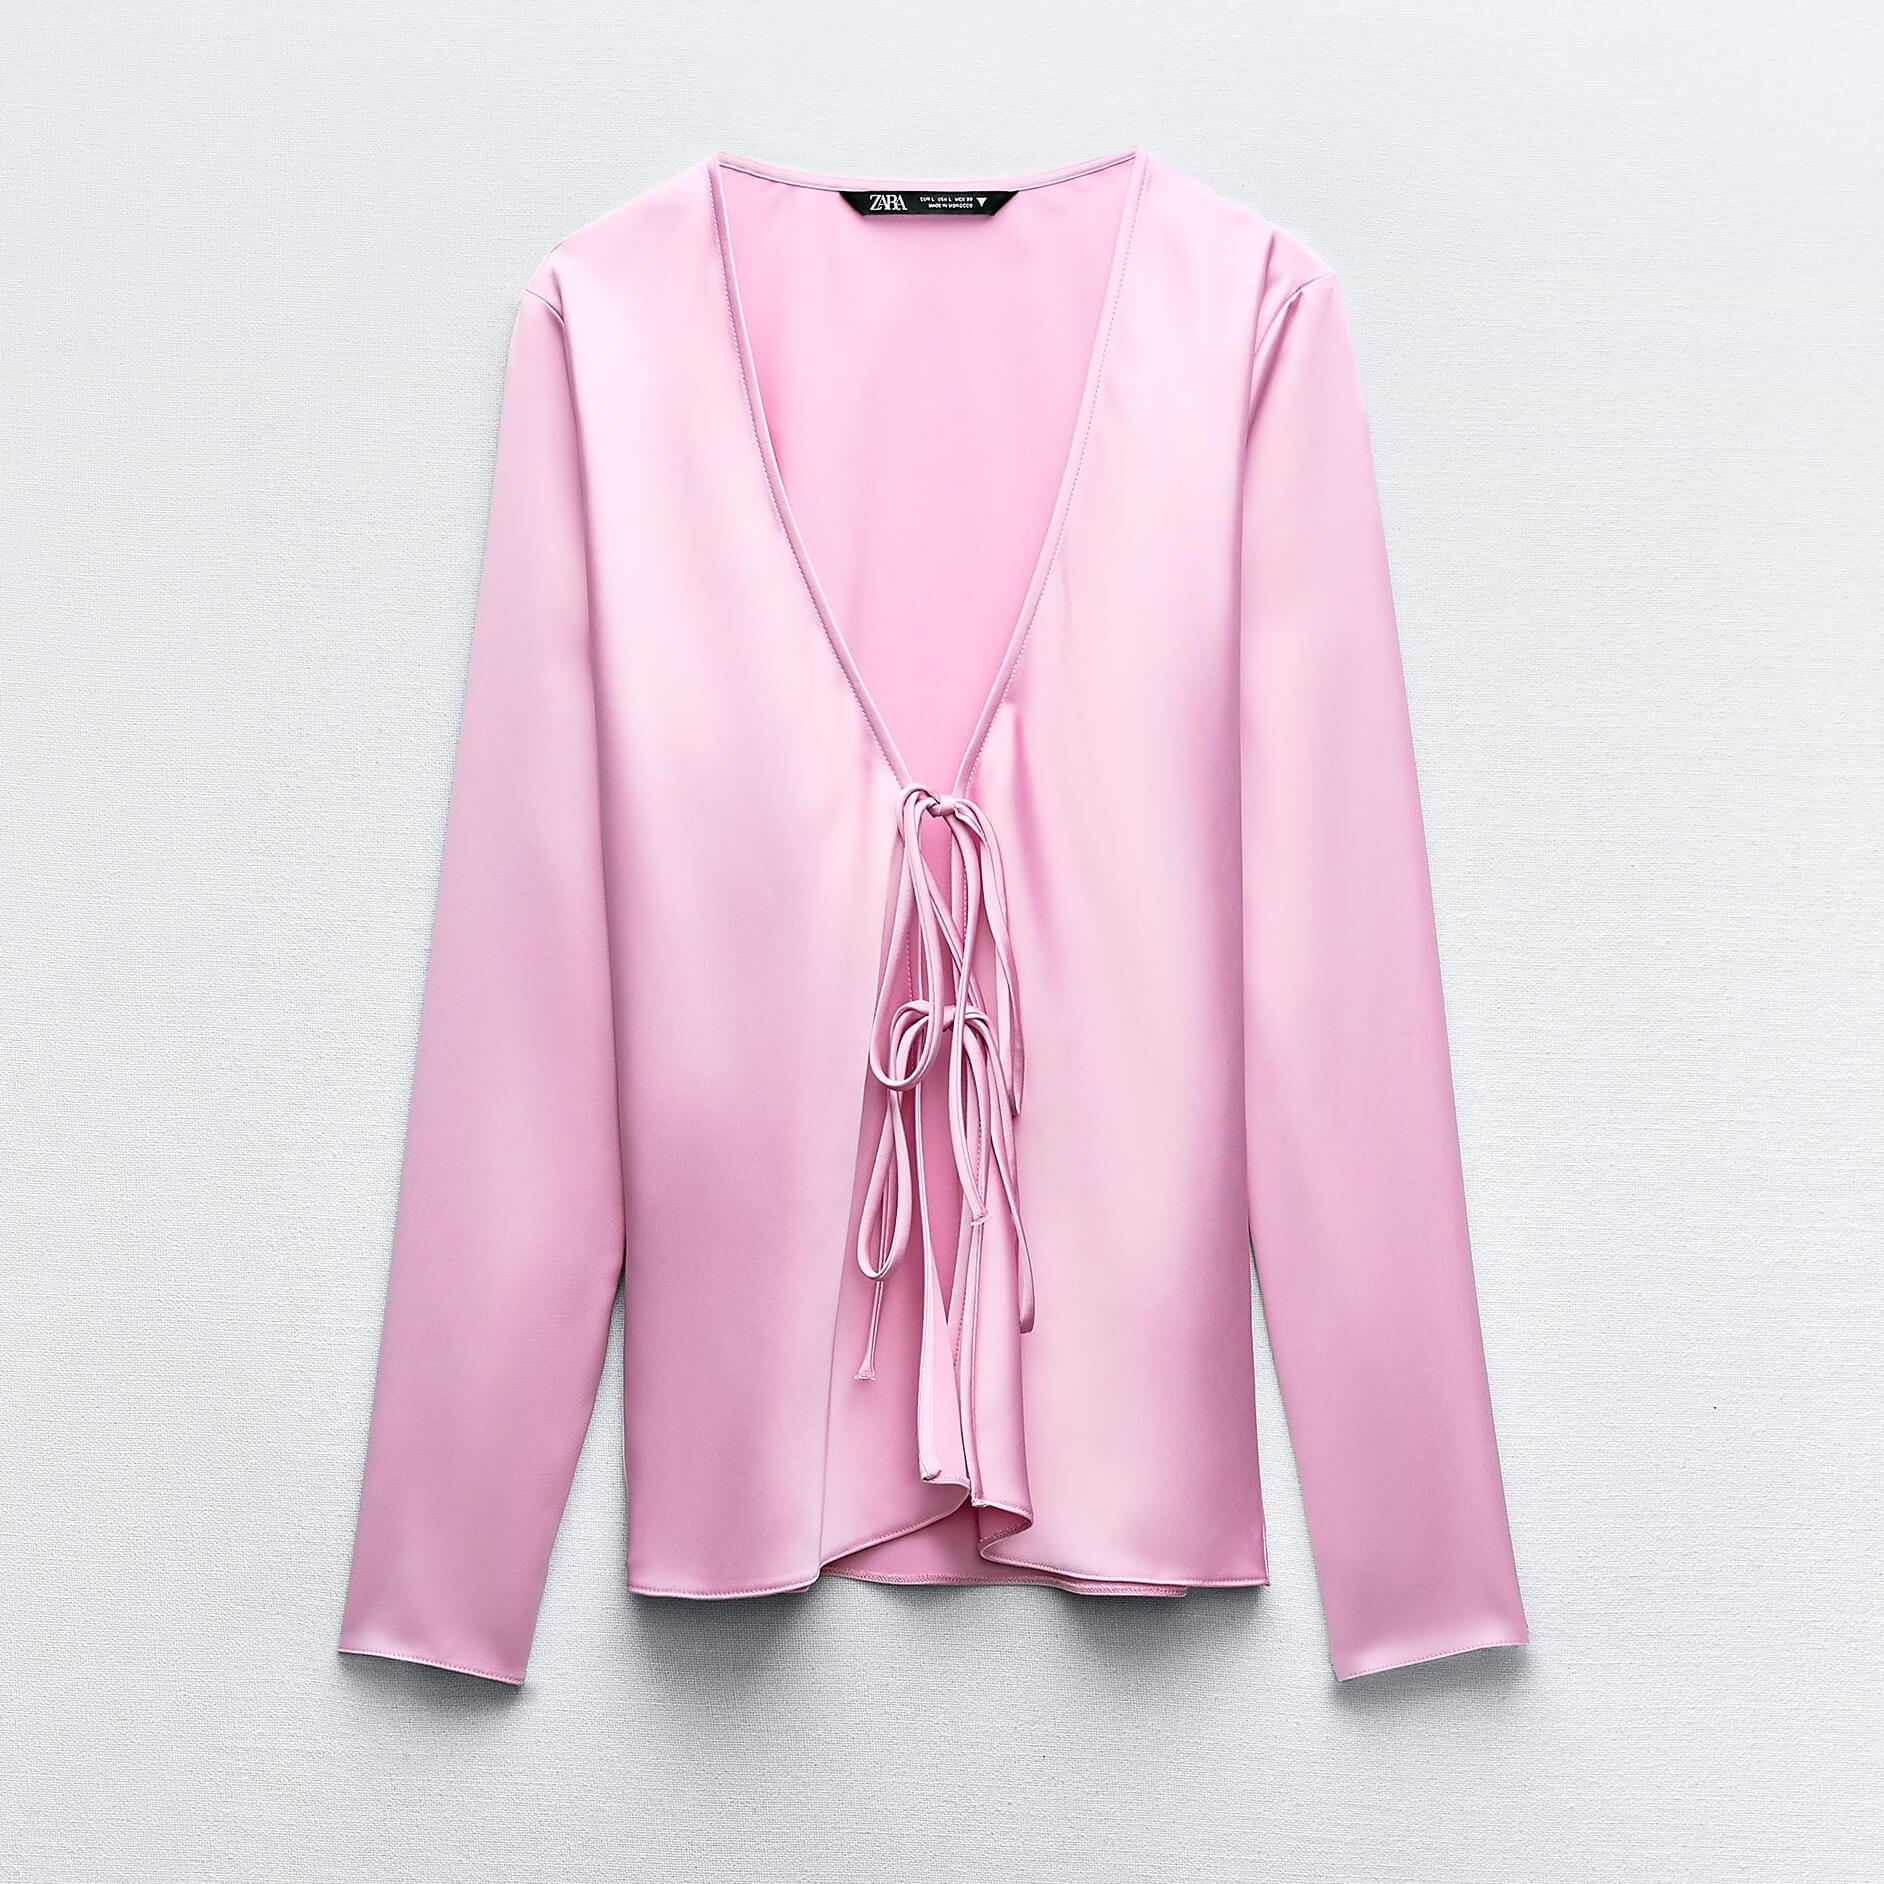 Рубашка Zara Satin With Ties, розовый рубашка zara satin with topstitching жемчужно серый